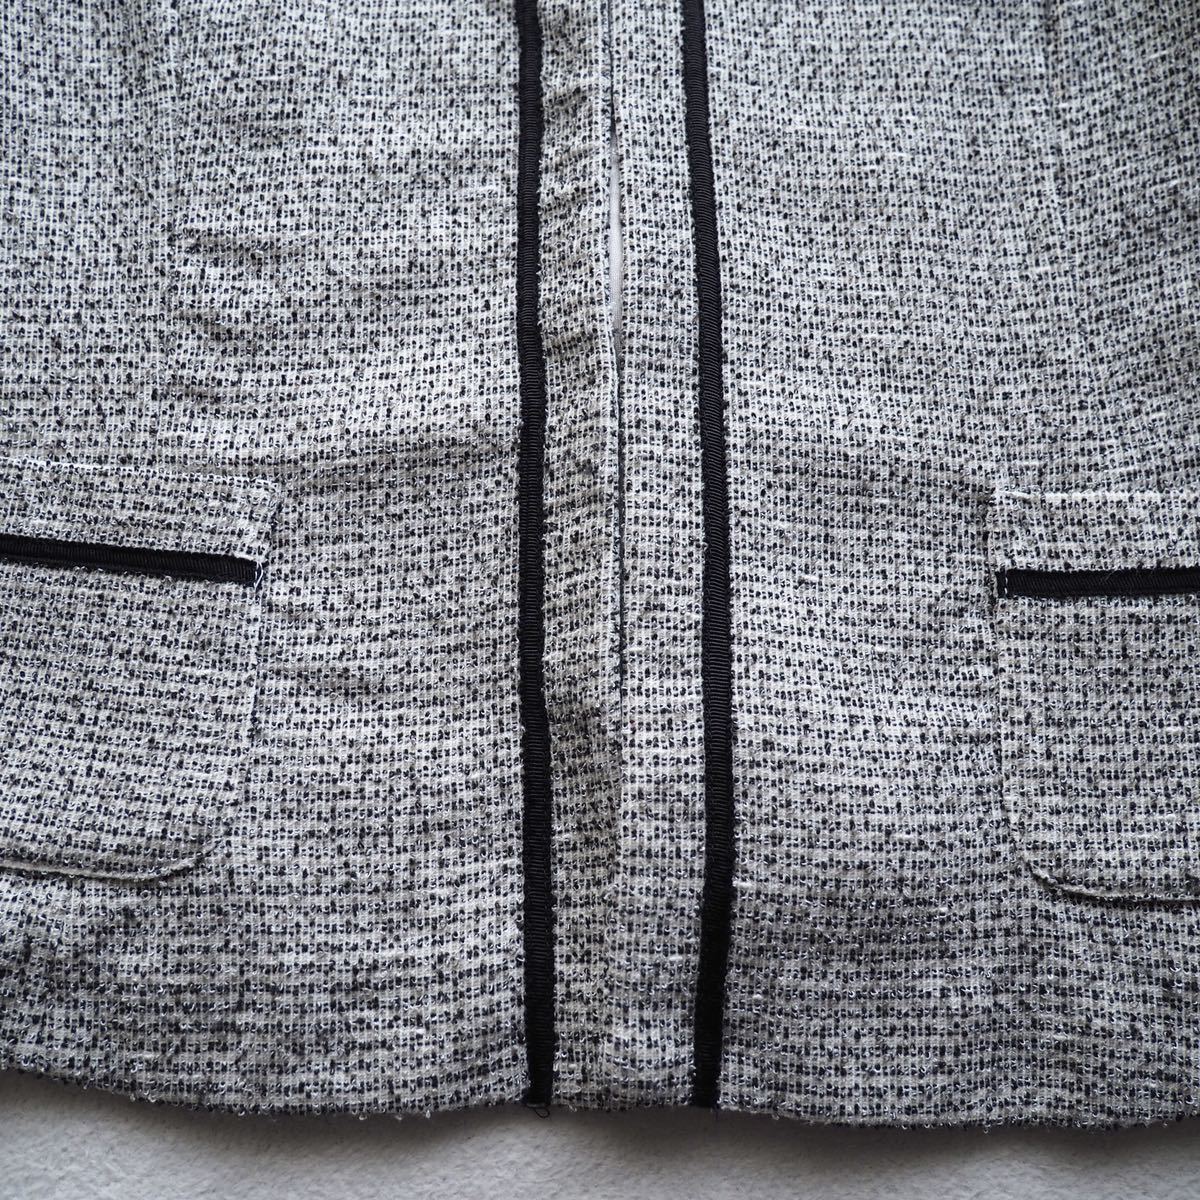 a.v.va-veve tweed jersey - no color jacket tweed jacket formal ceremony M size 